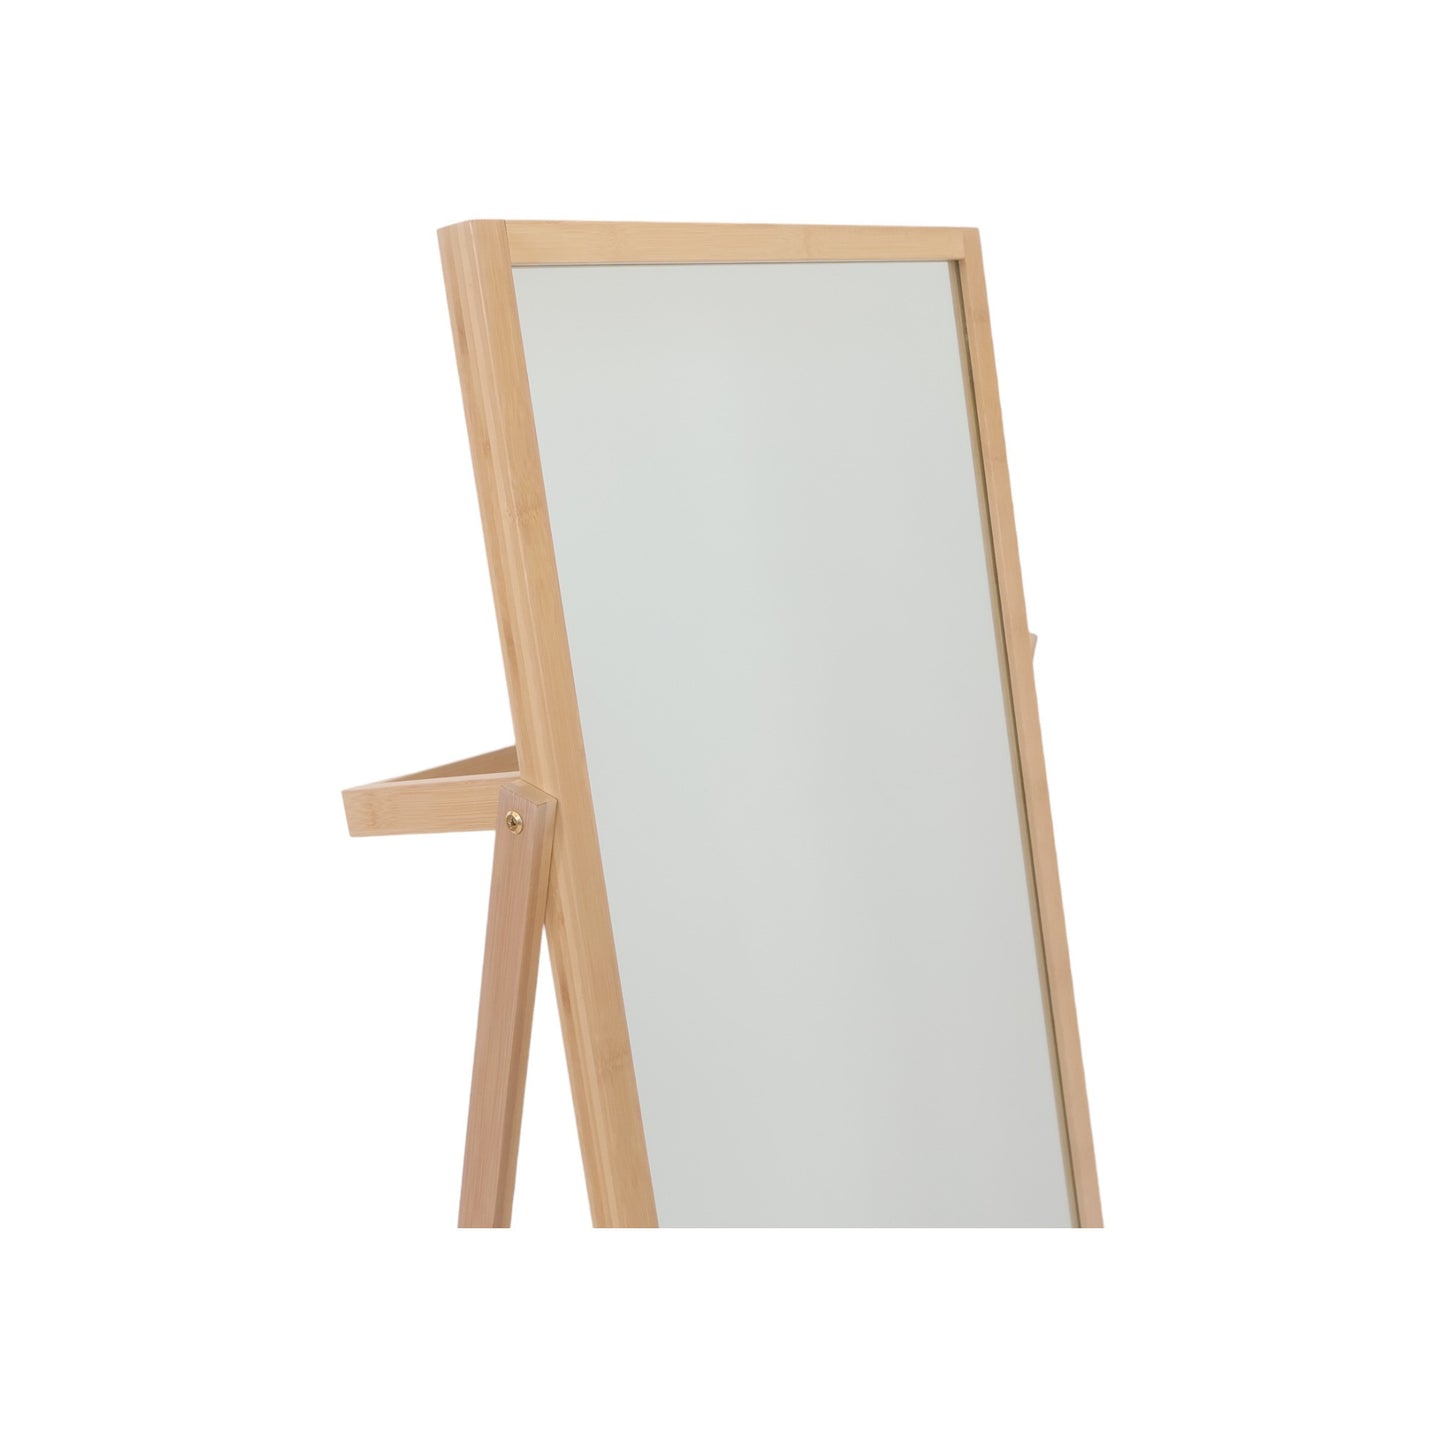 Kun brukt til utstilling | Speil LANDBOLYST 51x171 bambus